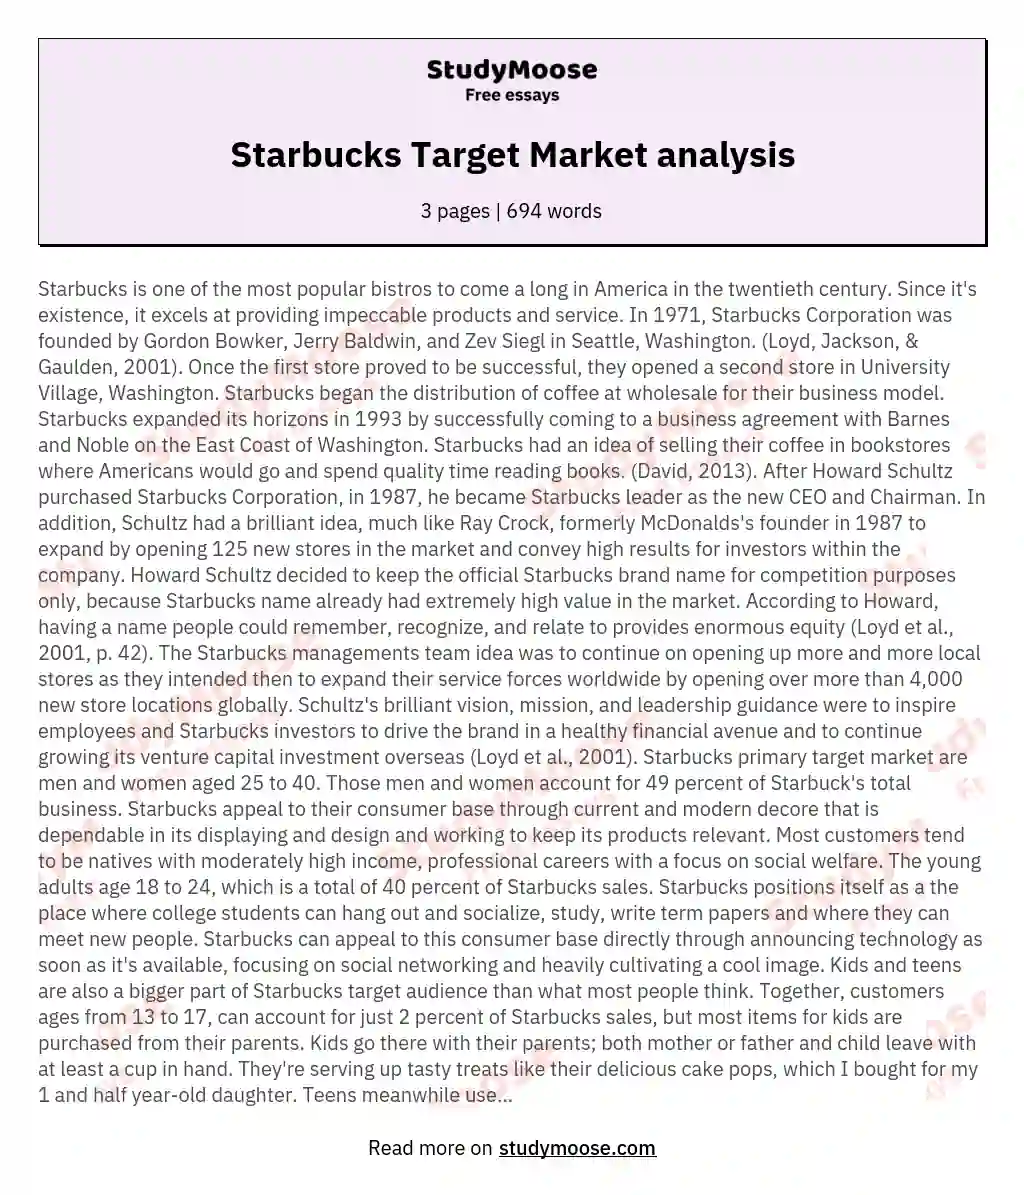 Starbucks Target Market analysis